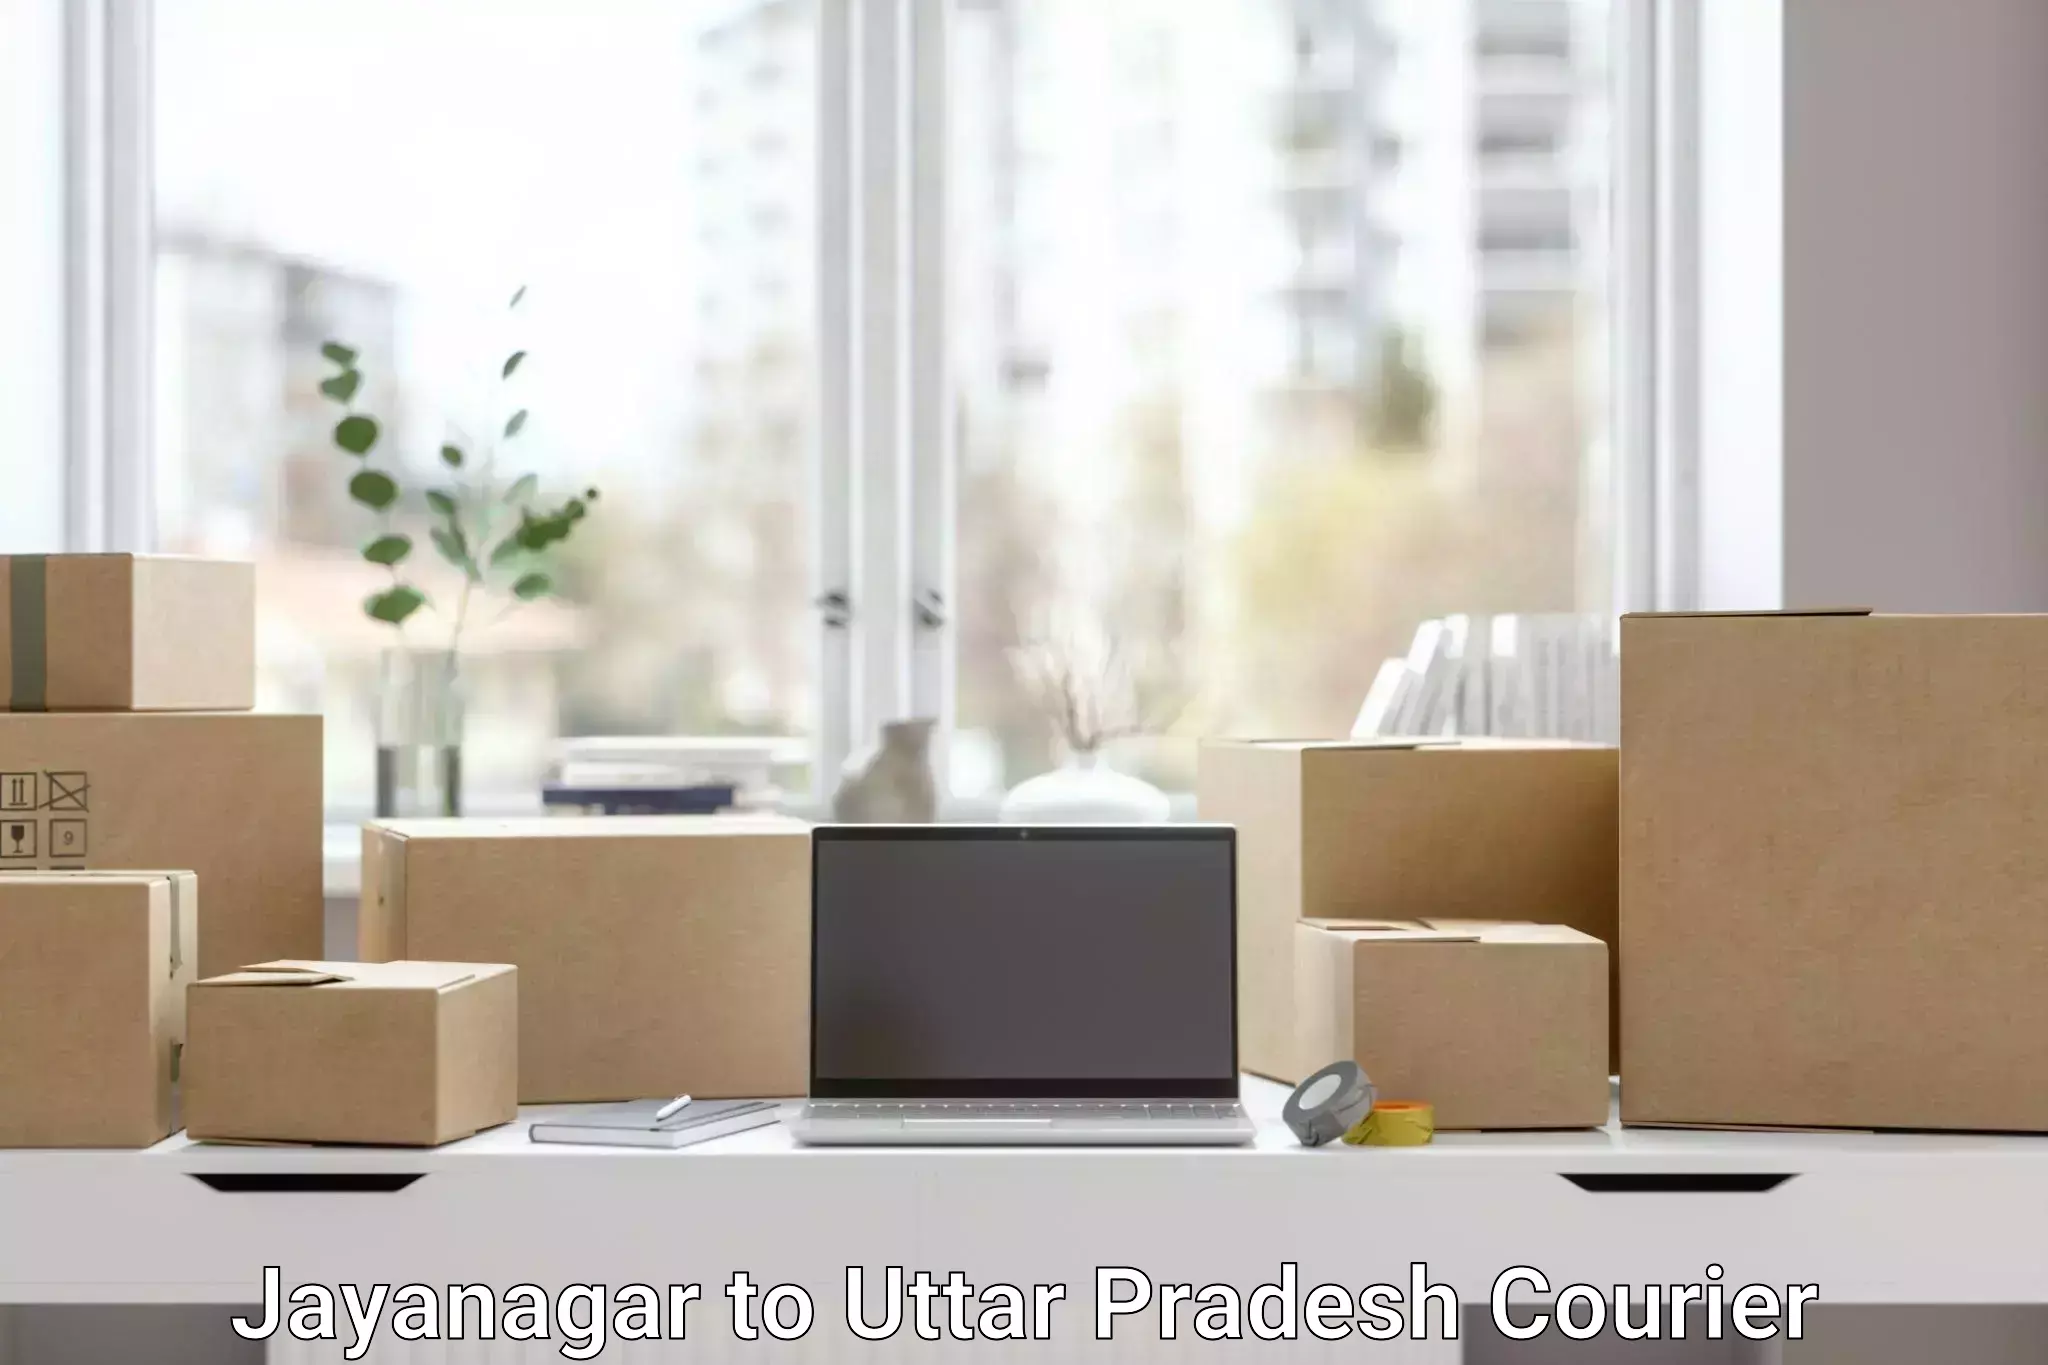 Premium courier services Jayanagar to Ghosi